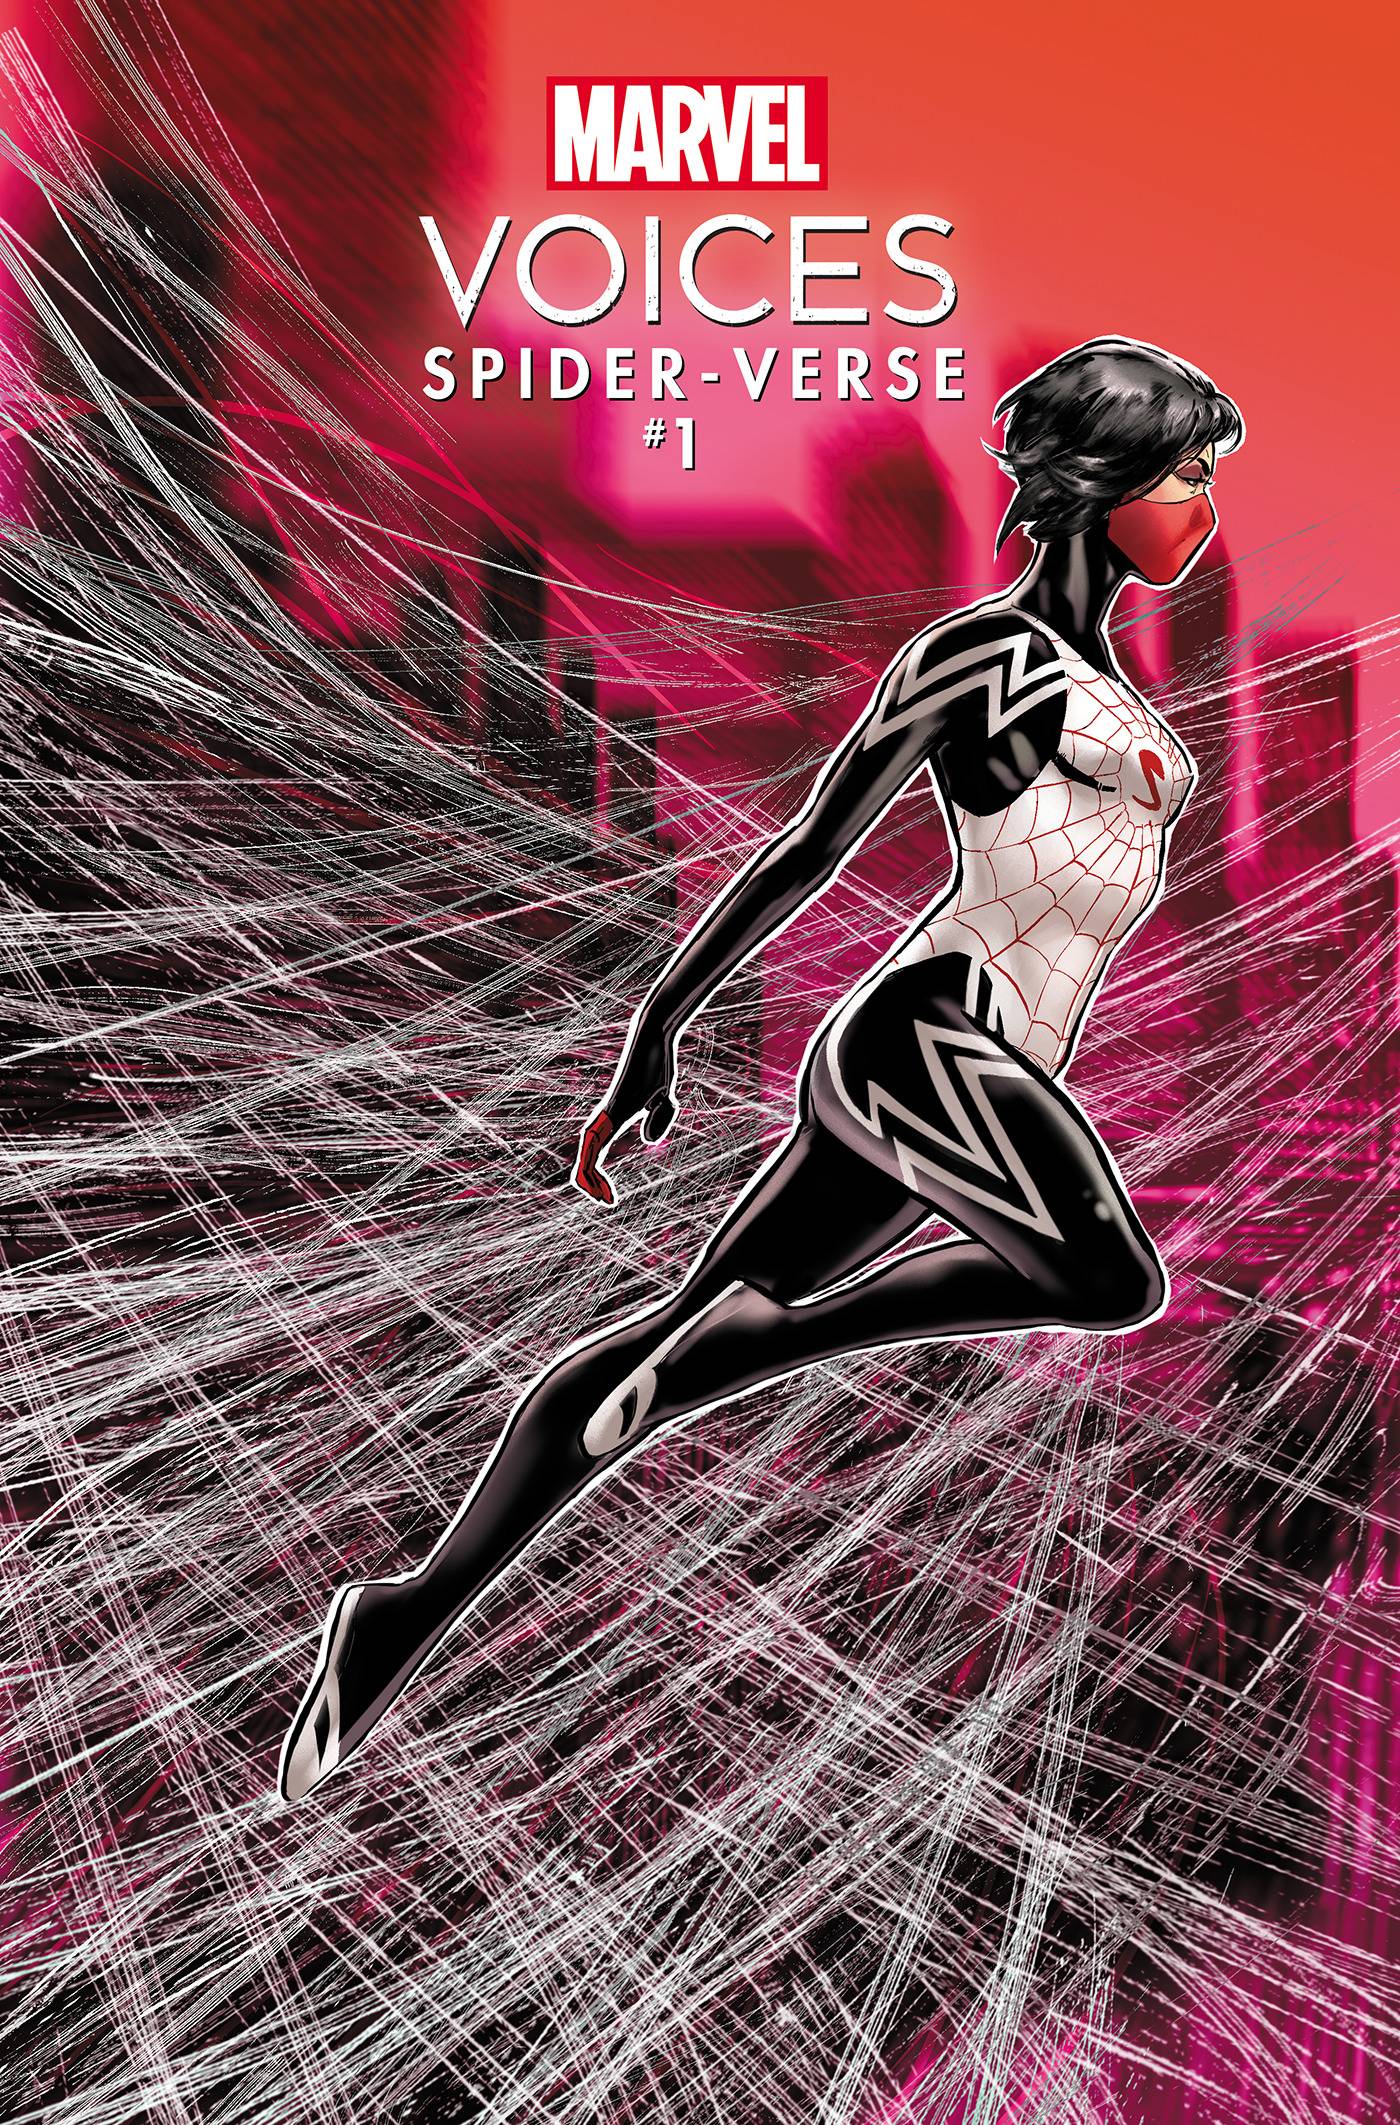 Marvel voices spider-verse #1